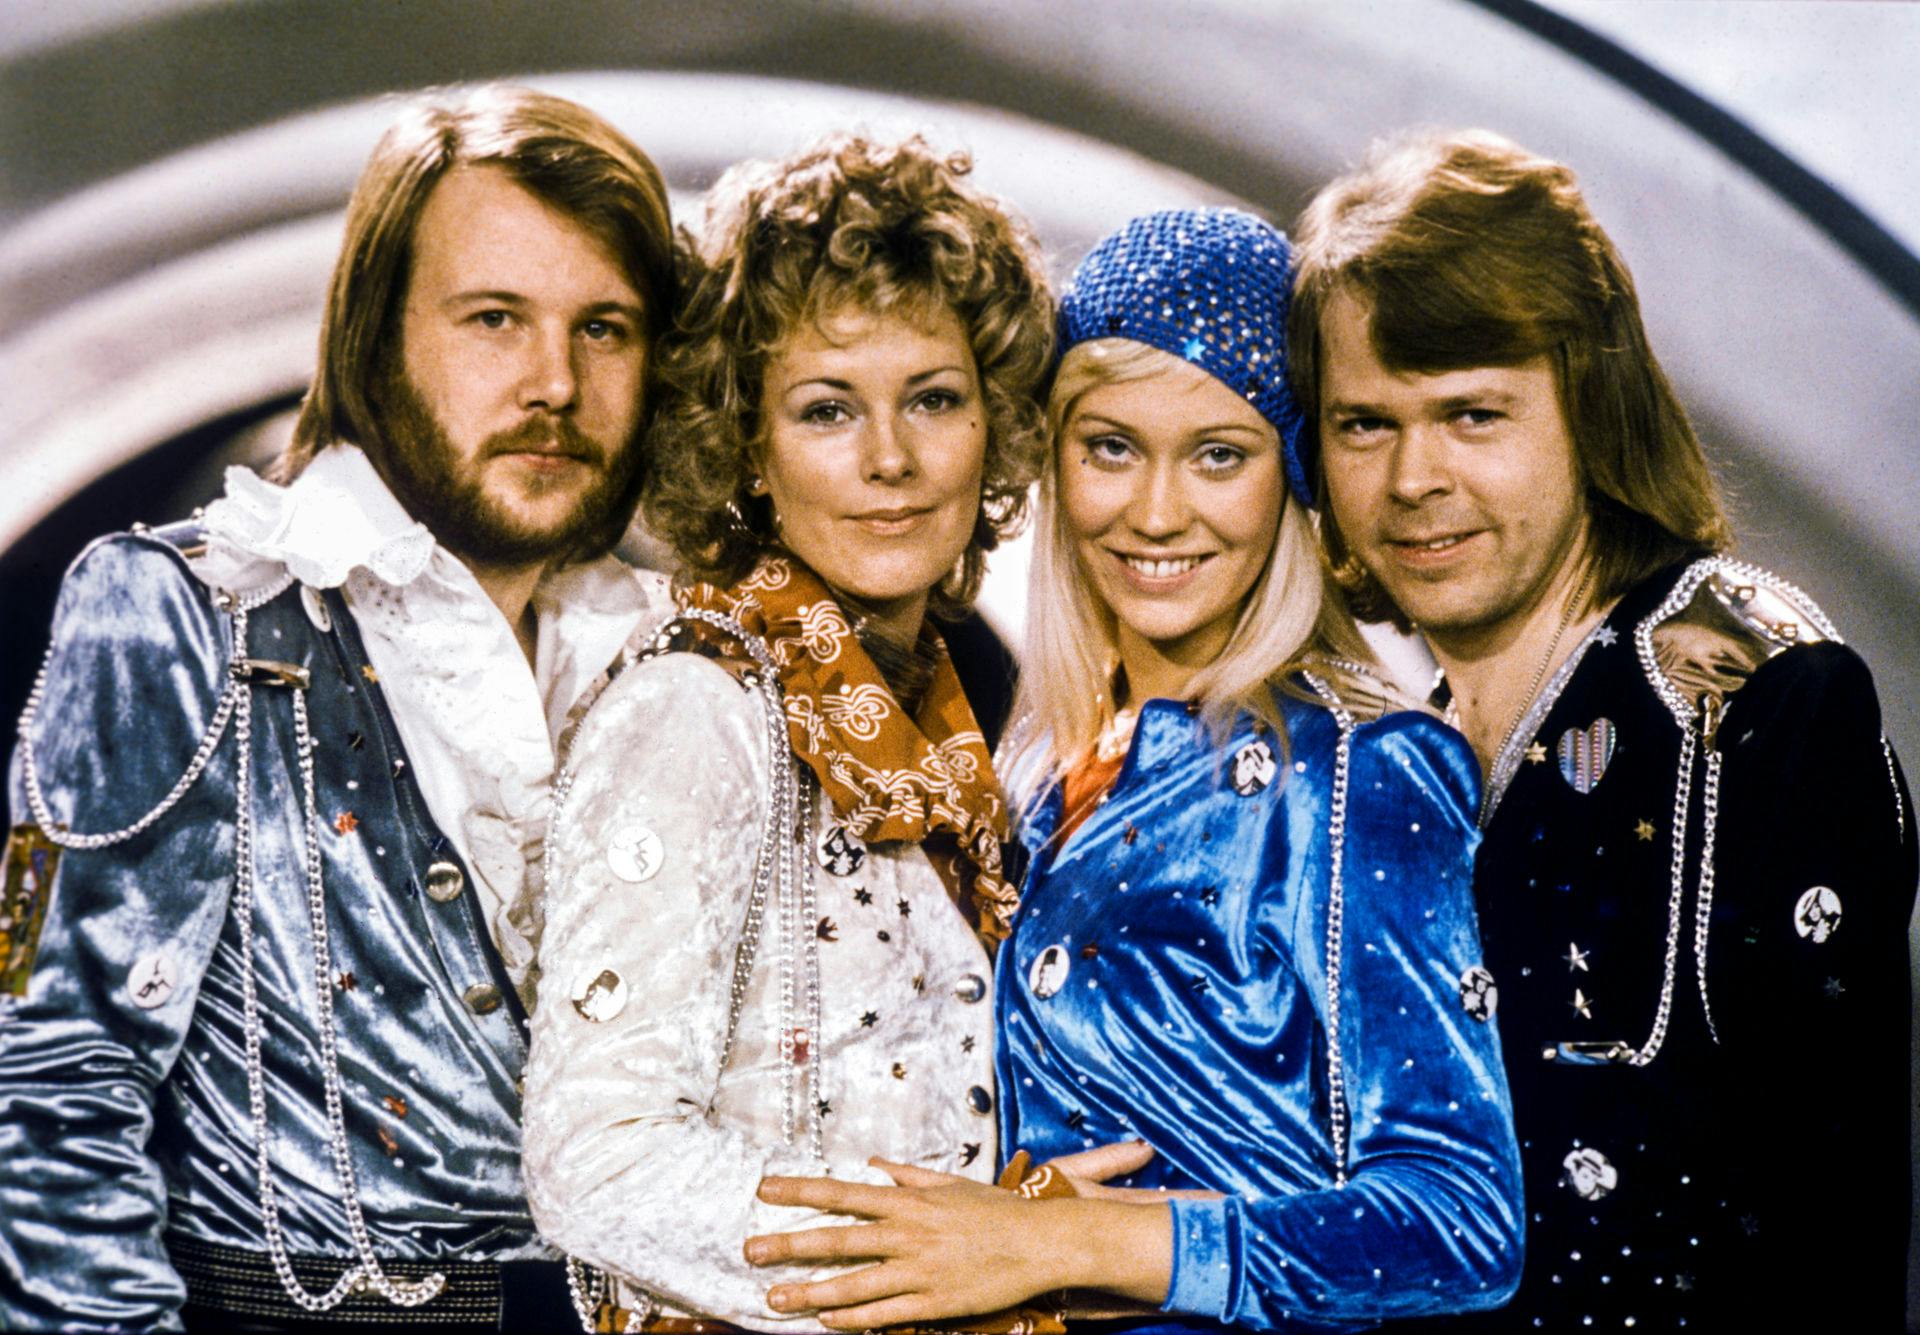 Abba startede i1970, og de blev verdenskendt, da de i 1974 vandt det europæiske melodi grand prix med sangen "Waterloo".&nbsp;